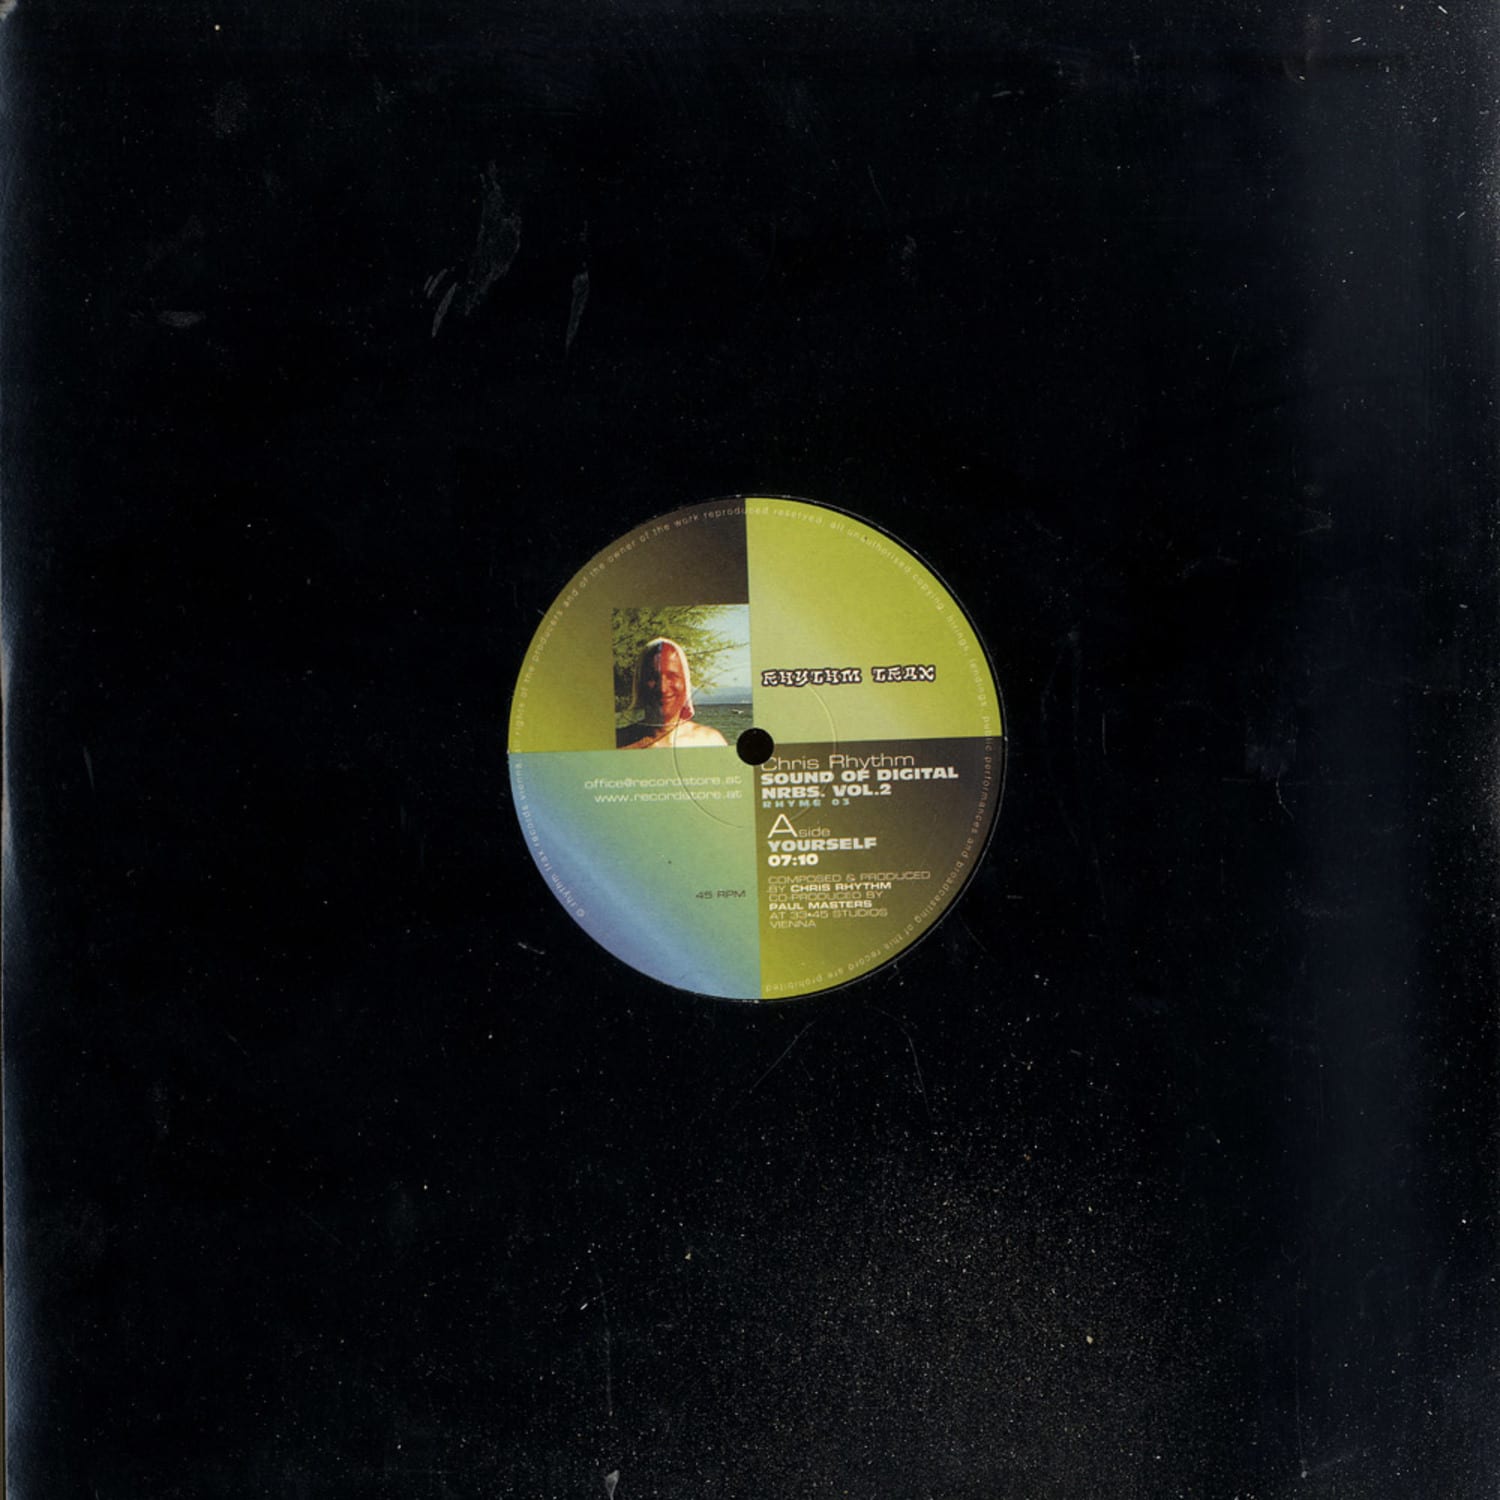 Chris Rhythm & Paul Masters - SOUND OF DIGITAL NRBS. VOL. 2